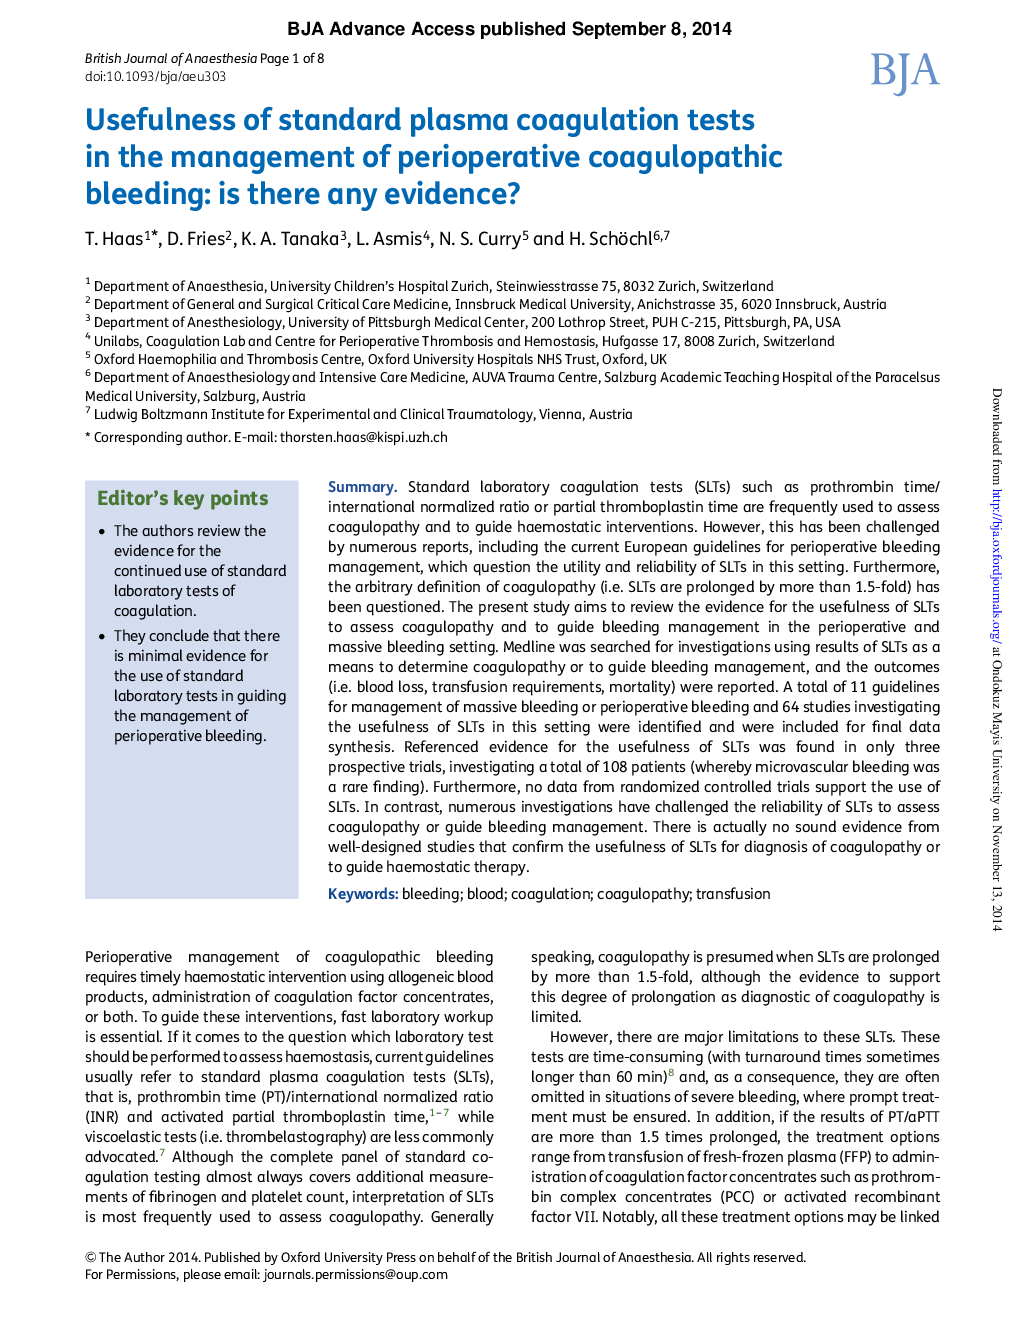 مفید بودن تستهای انعقادی استاندارد پلاسما در مدیریت خونریزی کواگولوپاتیک: هر شواهدی وجود دارد؟ 